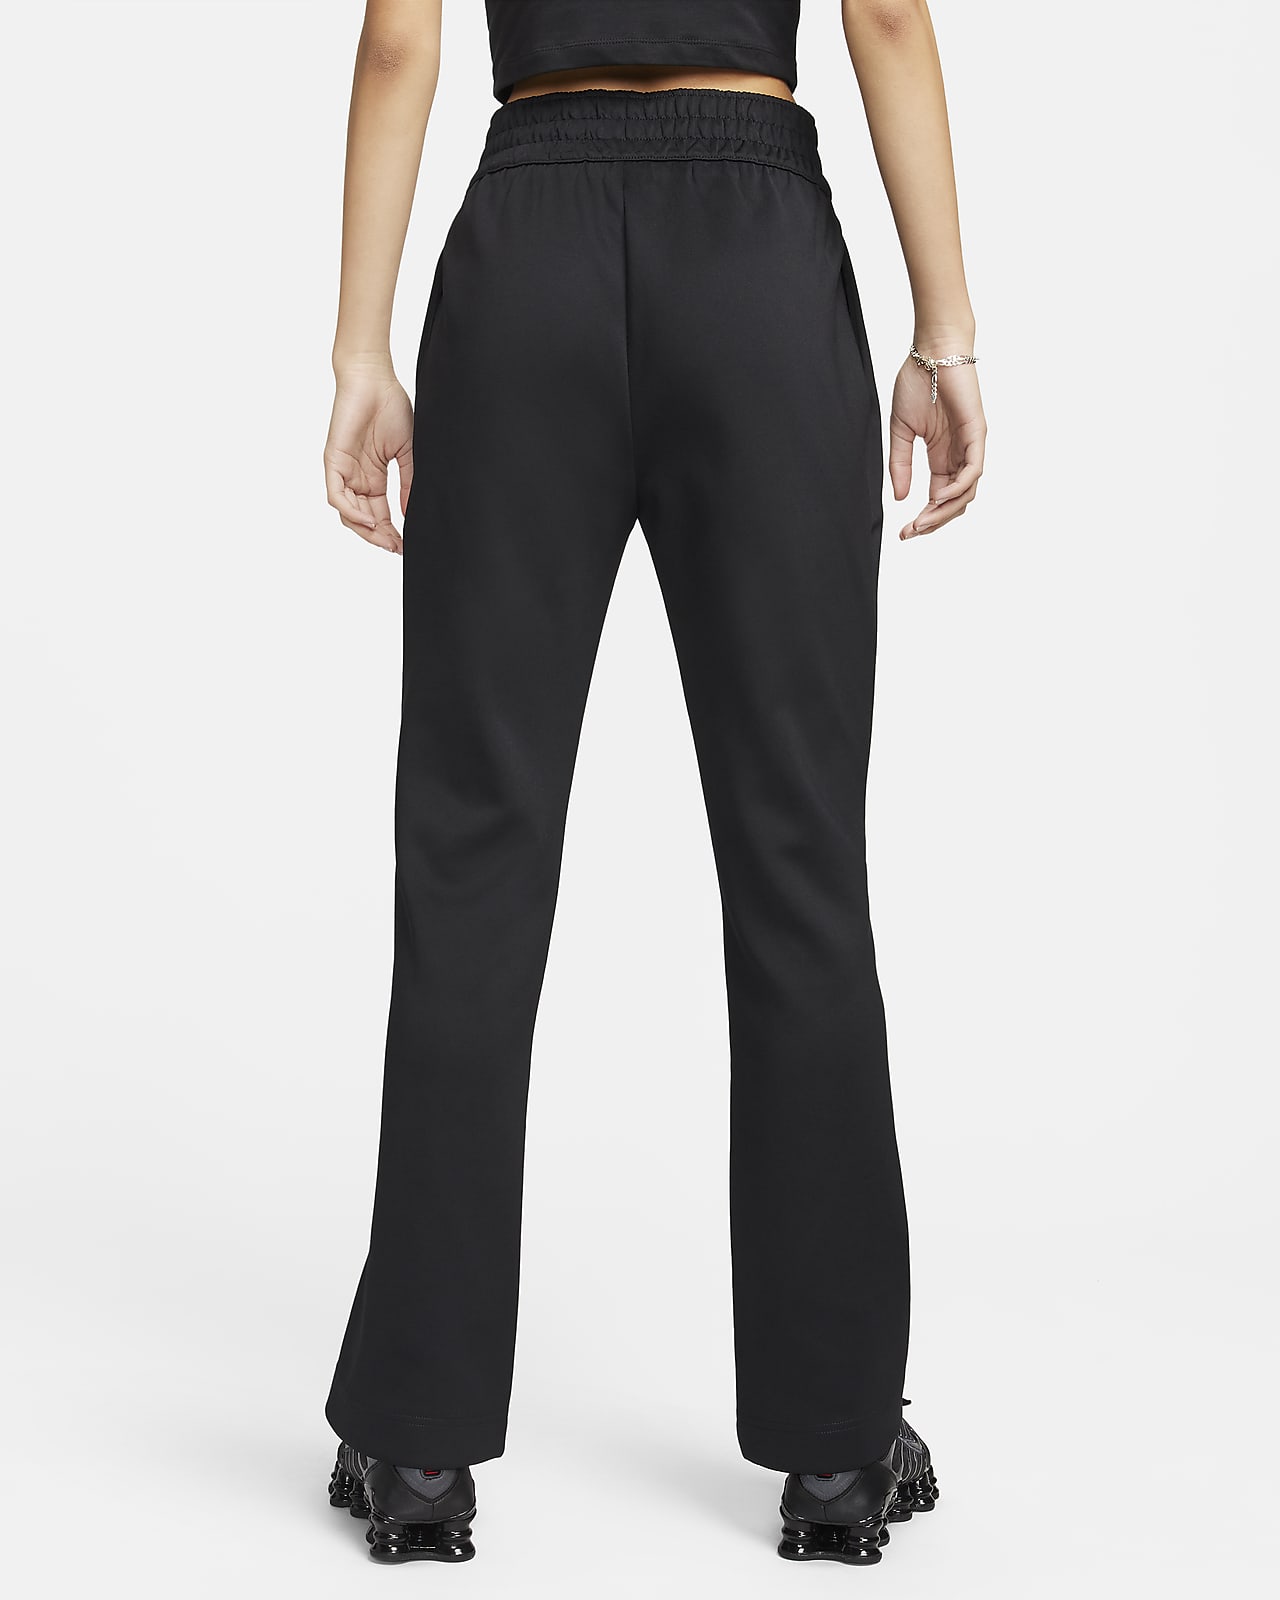 Black plus size bootcut flare pants & trousers for women xxxxl to xxxxxl.